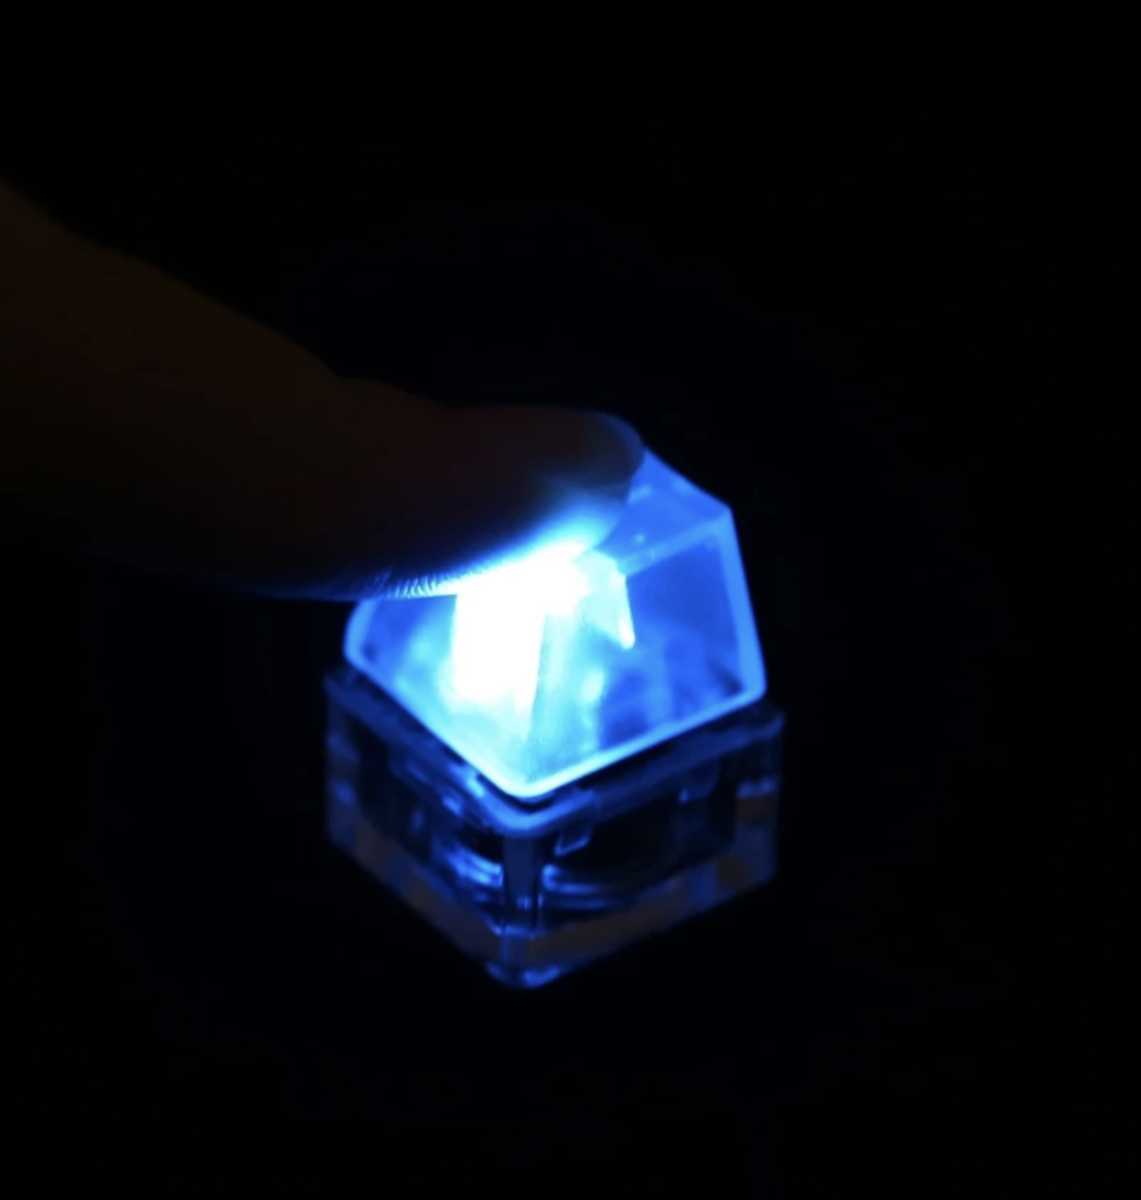 【匿名配送】キーボードースイッチ形キーホルダー☆押したら青く光る☆メカニカル構造チェーン付き